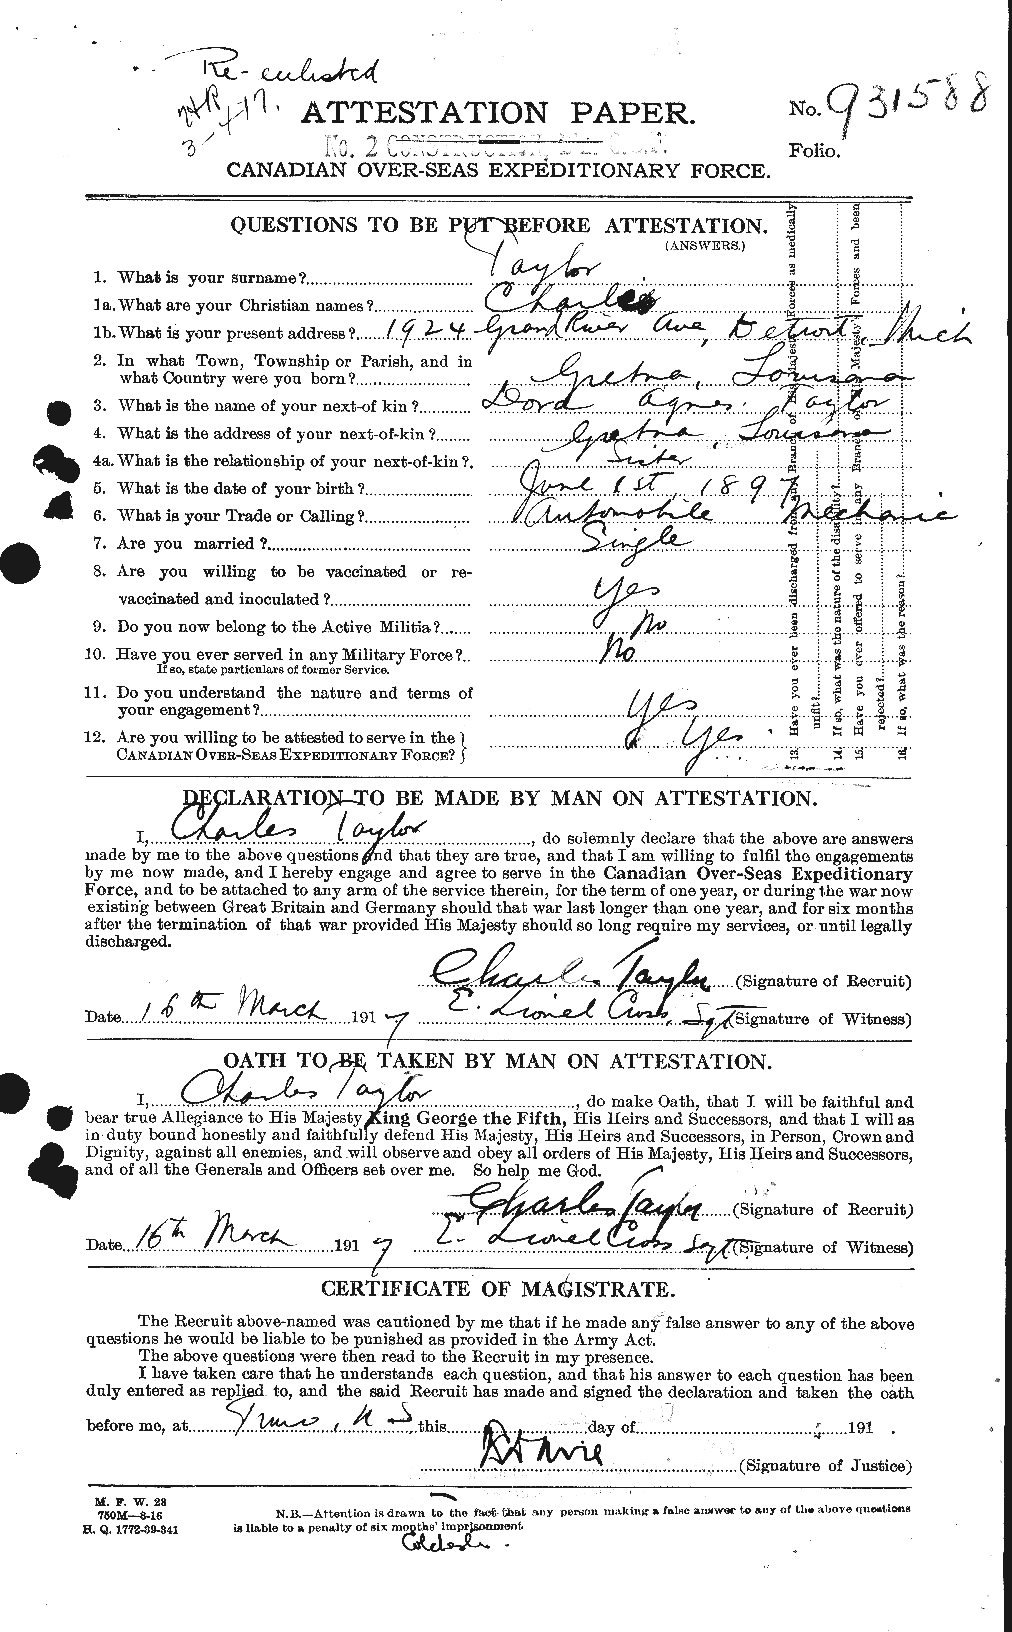 Dossiers du Personnel de la Première Guerre mondiale - CEC 626813a